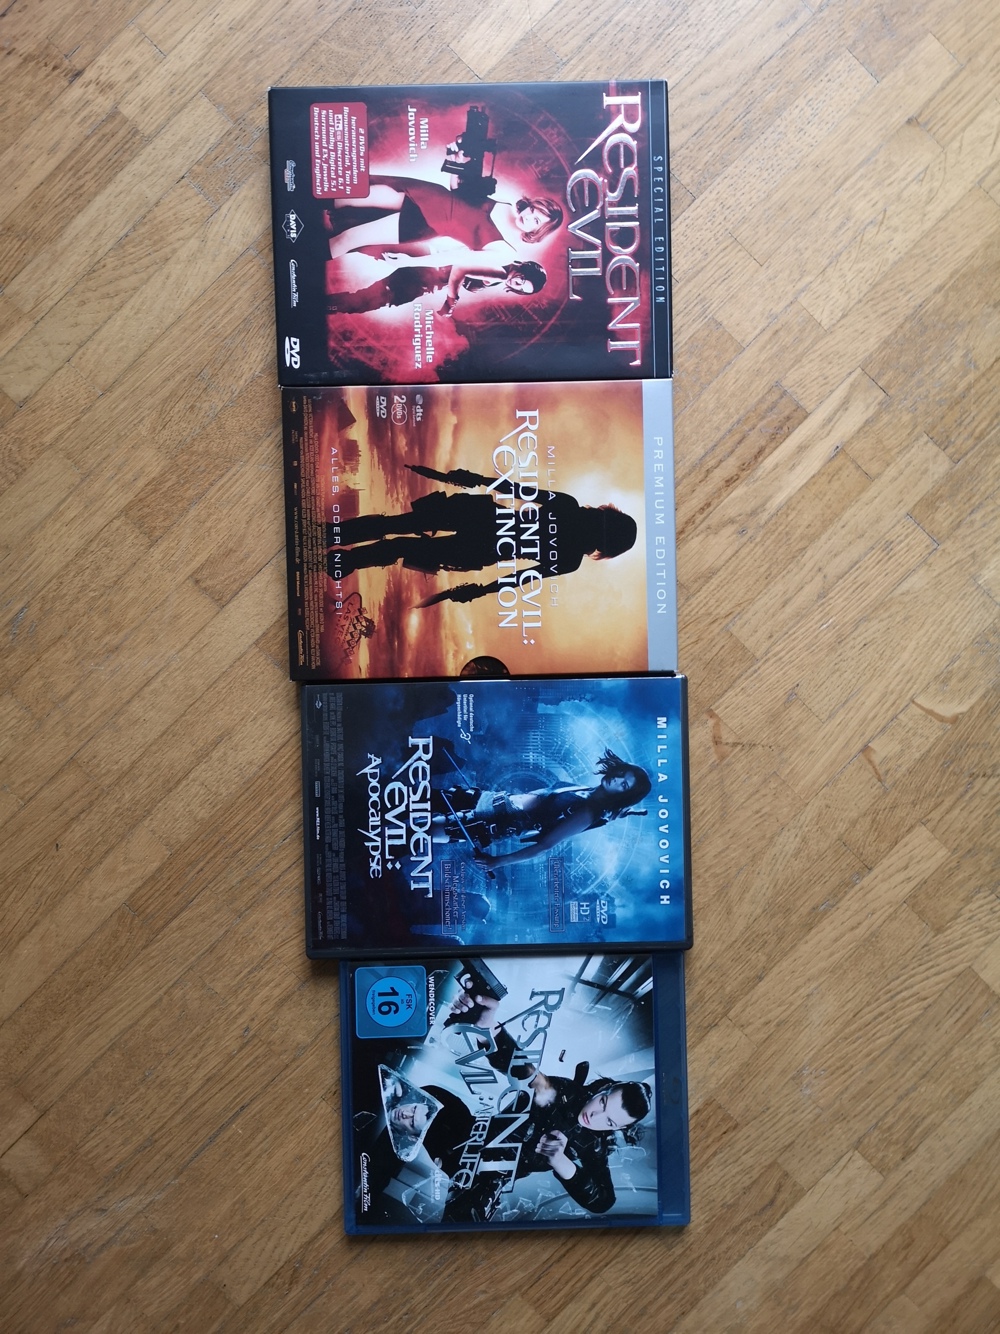 Filmesammlung, mehr als 35 Filme auf DVD und Blu-ray, Tribute von Panem, American Pie, Resident Evil